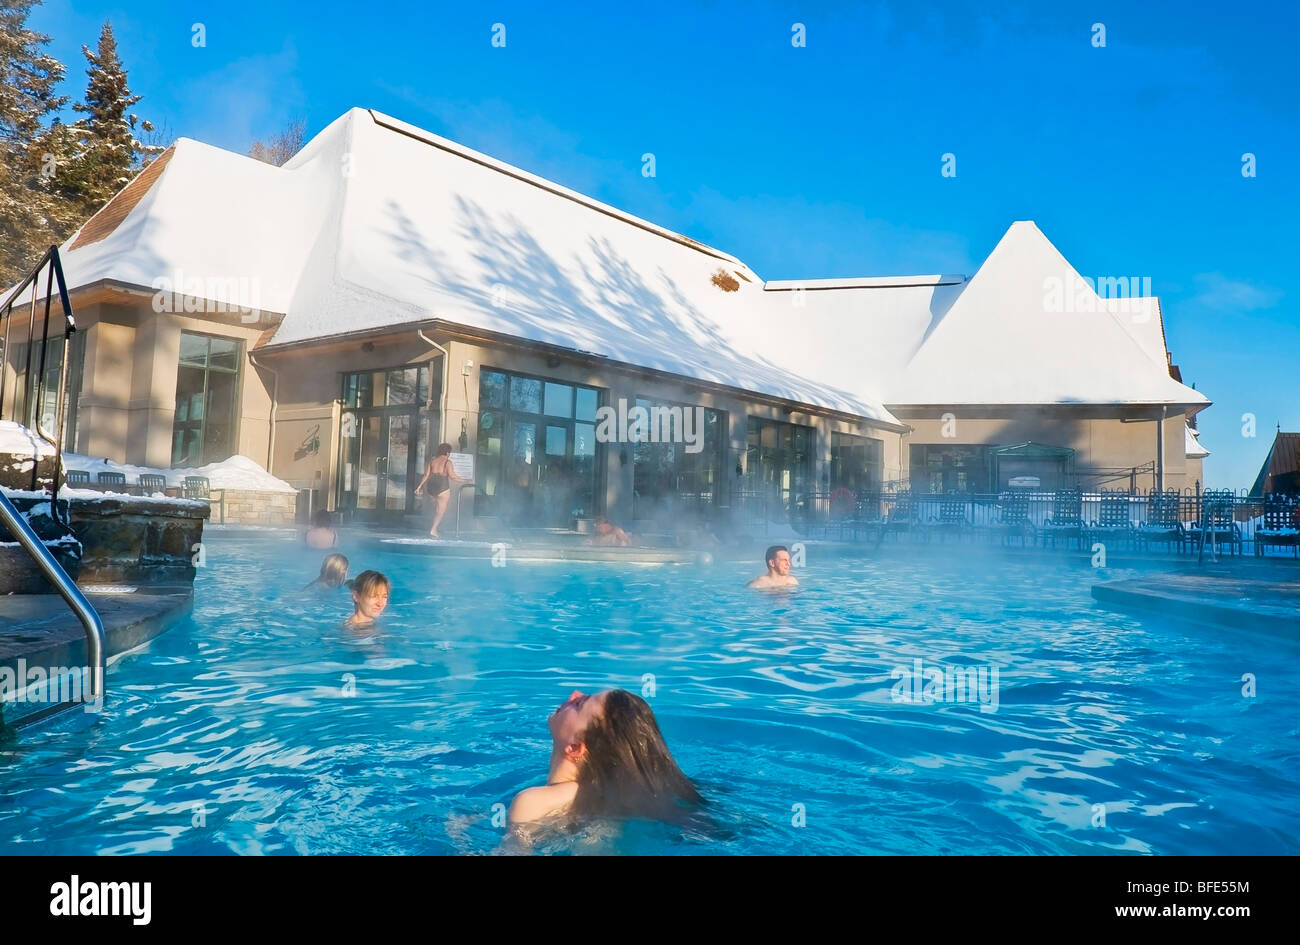 Les gens se baigner dans une piscine chauffée en hiver à l'hôtel Fairmont Manoir Richelieu, La Malbaie, Charlevoix, Québec, Canada Banque D'Images